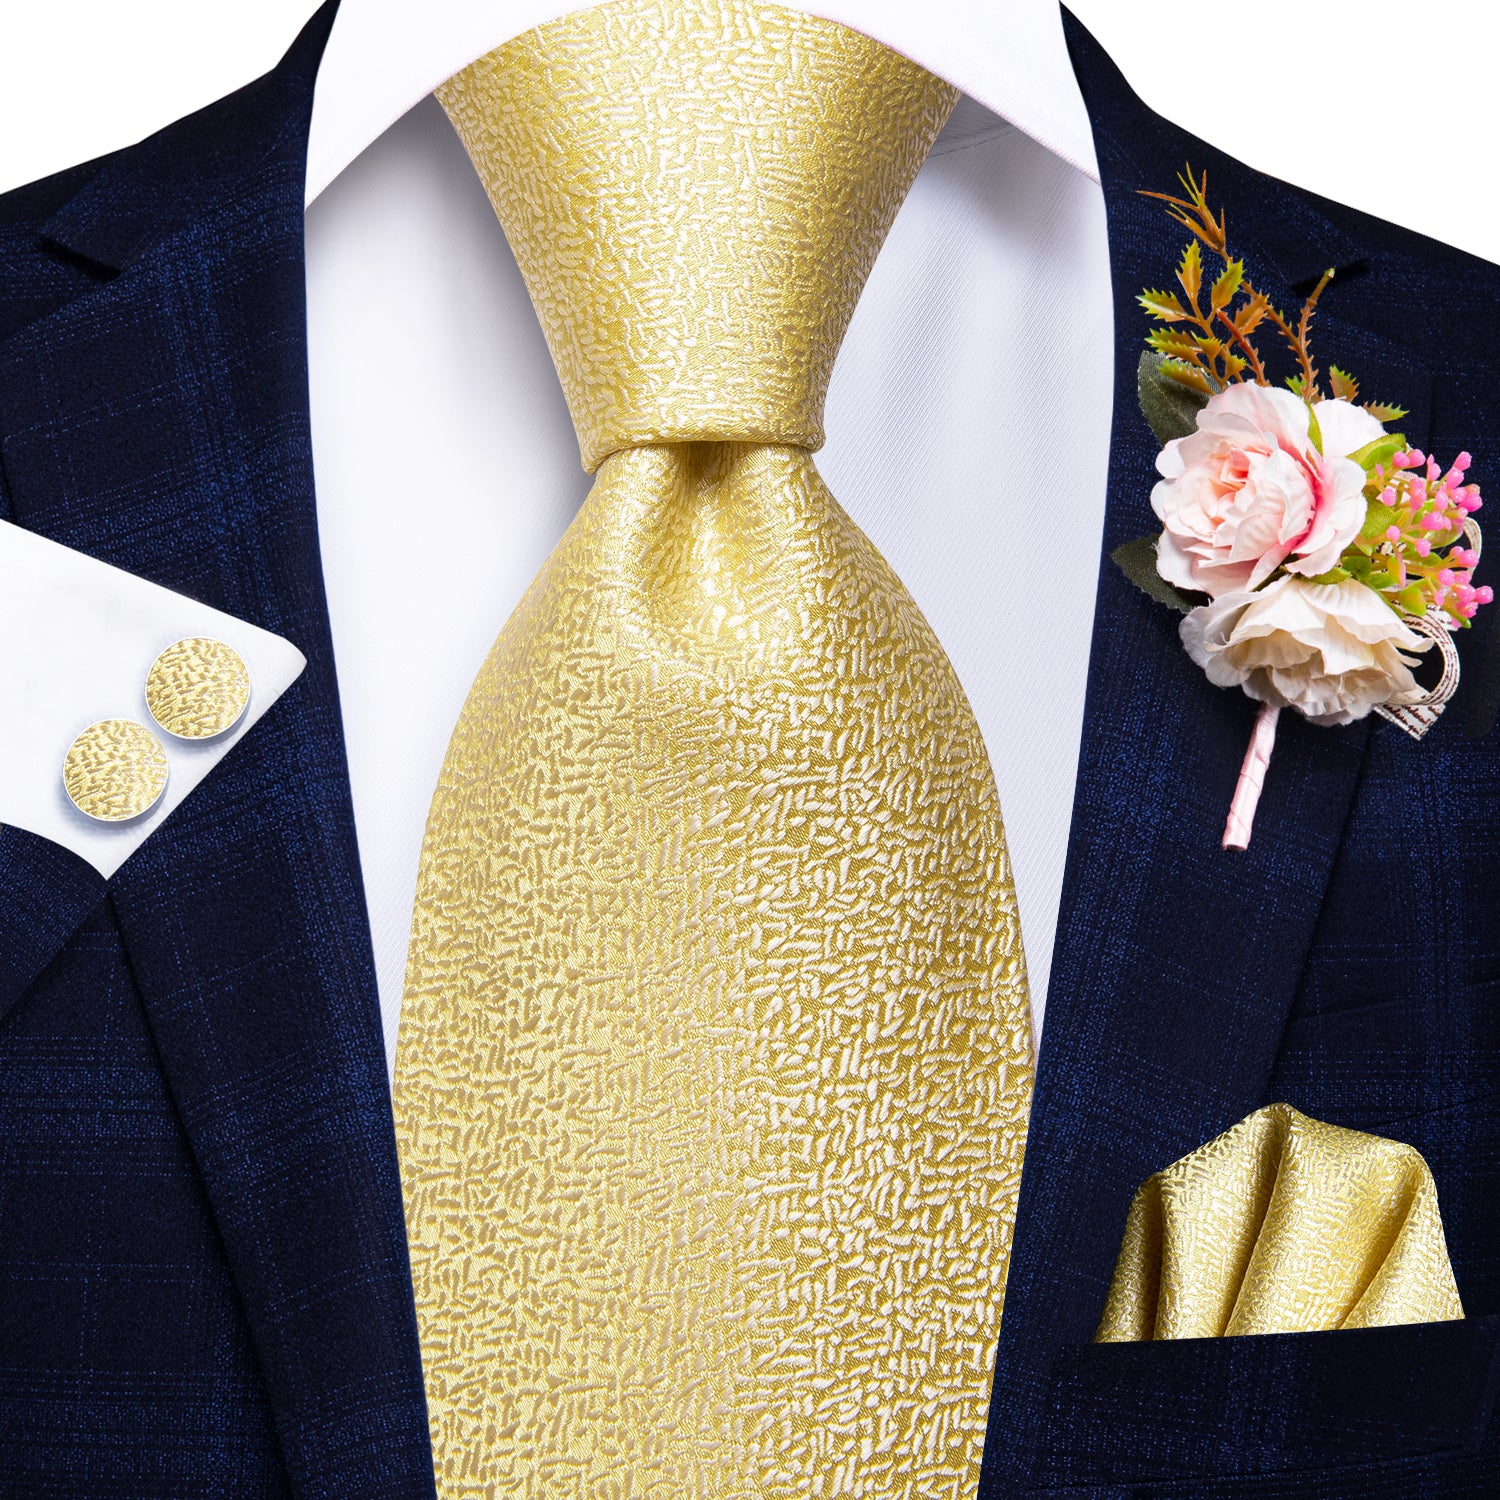 Golden Solid Tie Handkerchief Cufflinks Set with Wedding Brooch